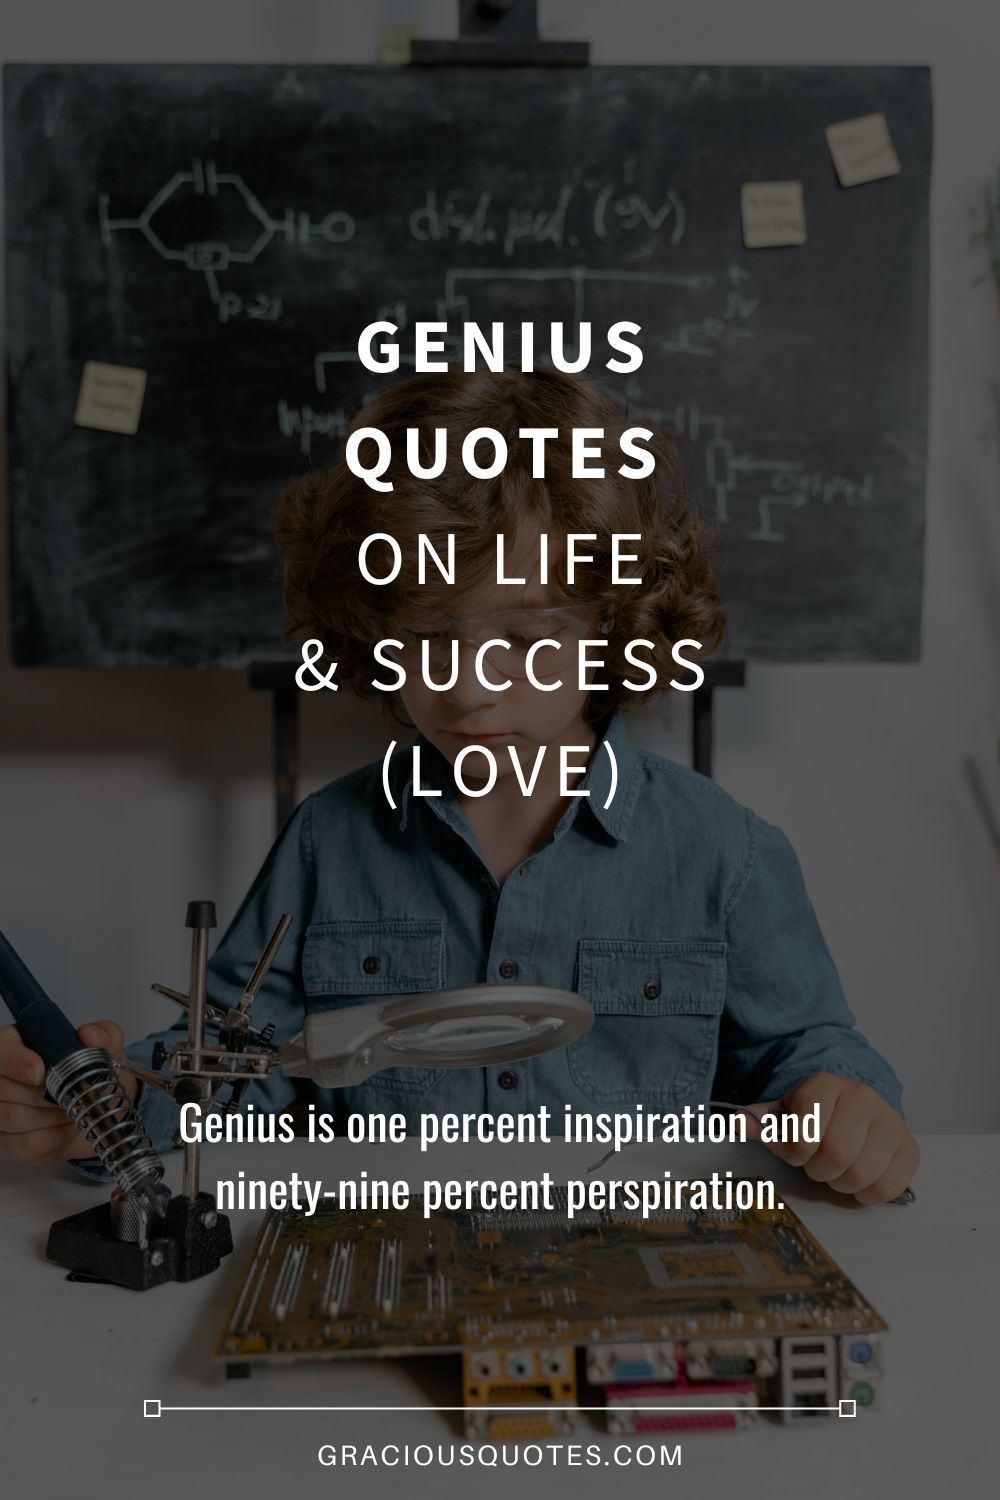 Genius Quotes on Life & Success (LOVE) - Gracious Quotes